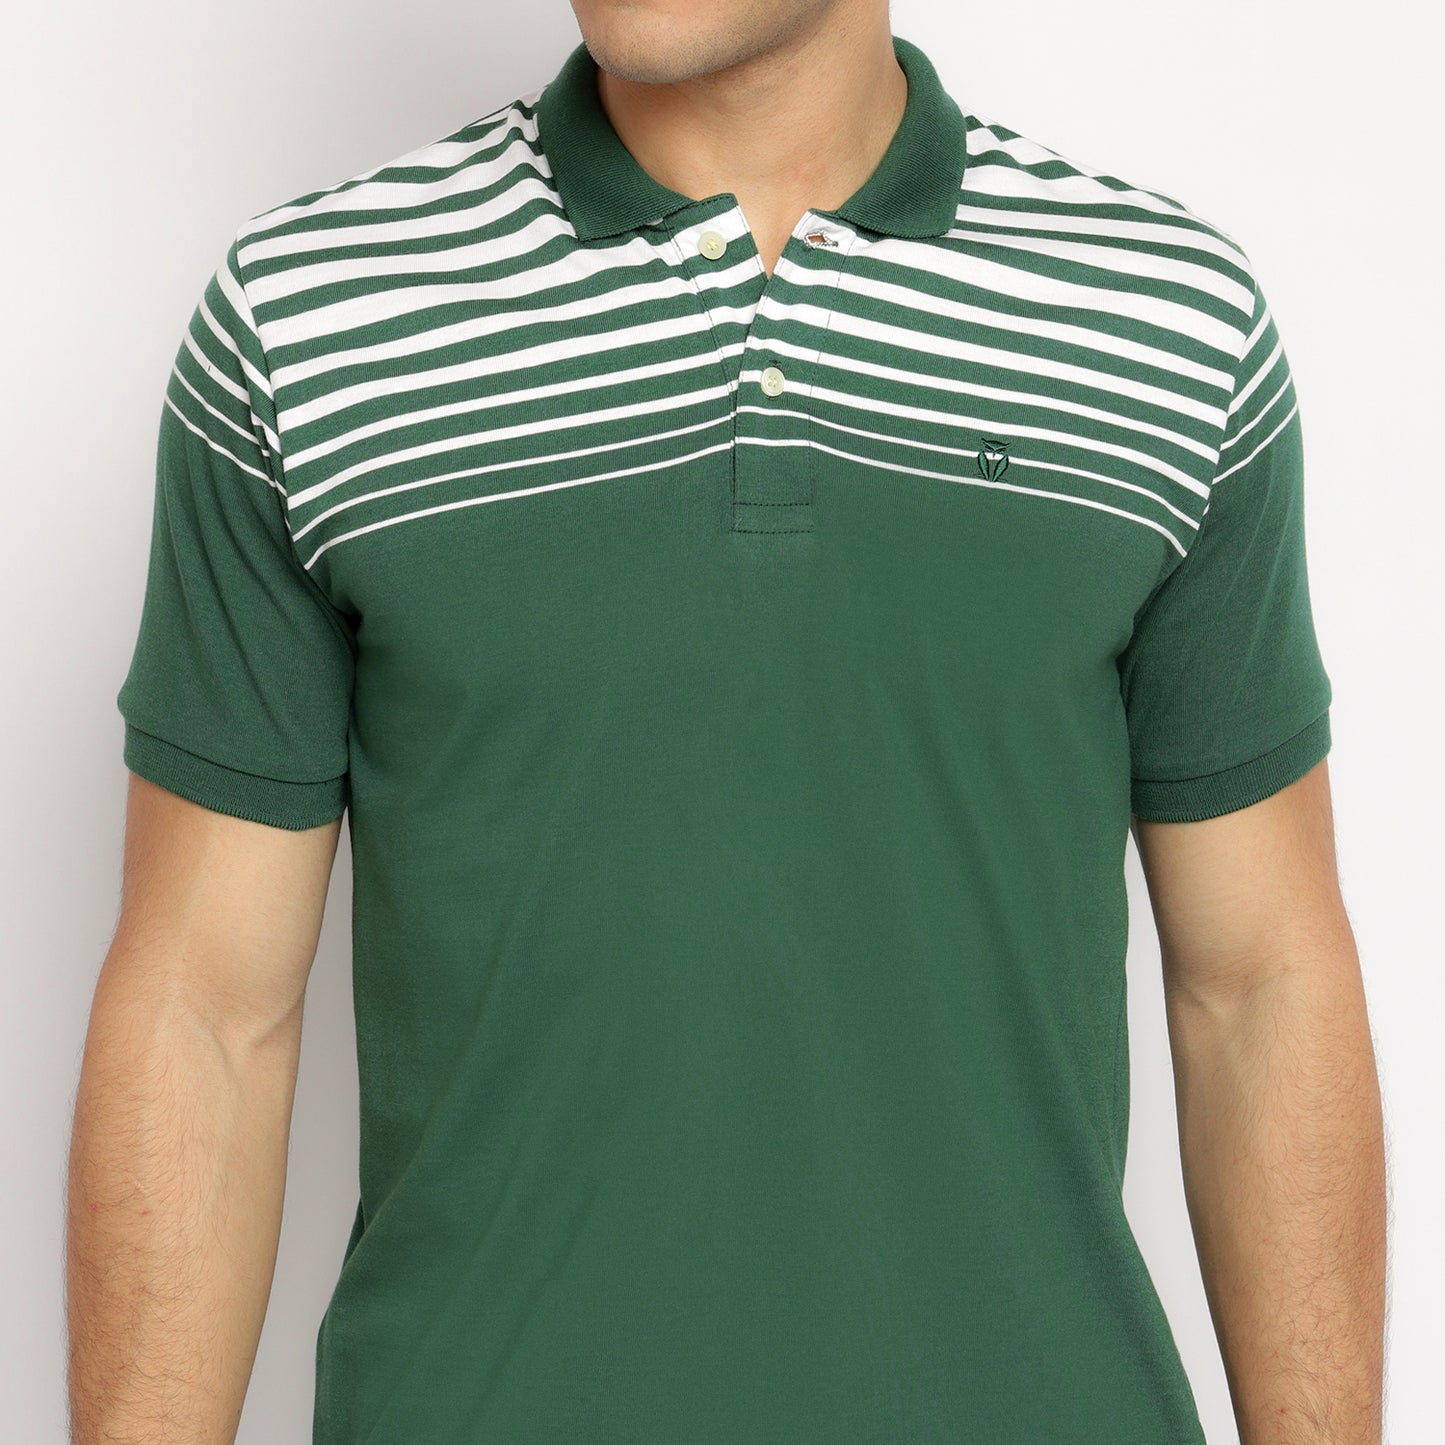 MATSUDA Kaos Polo Shirt Pria Kerah Chiryu Green